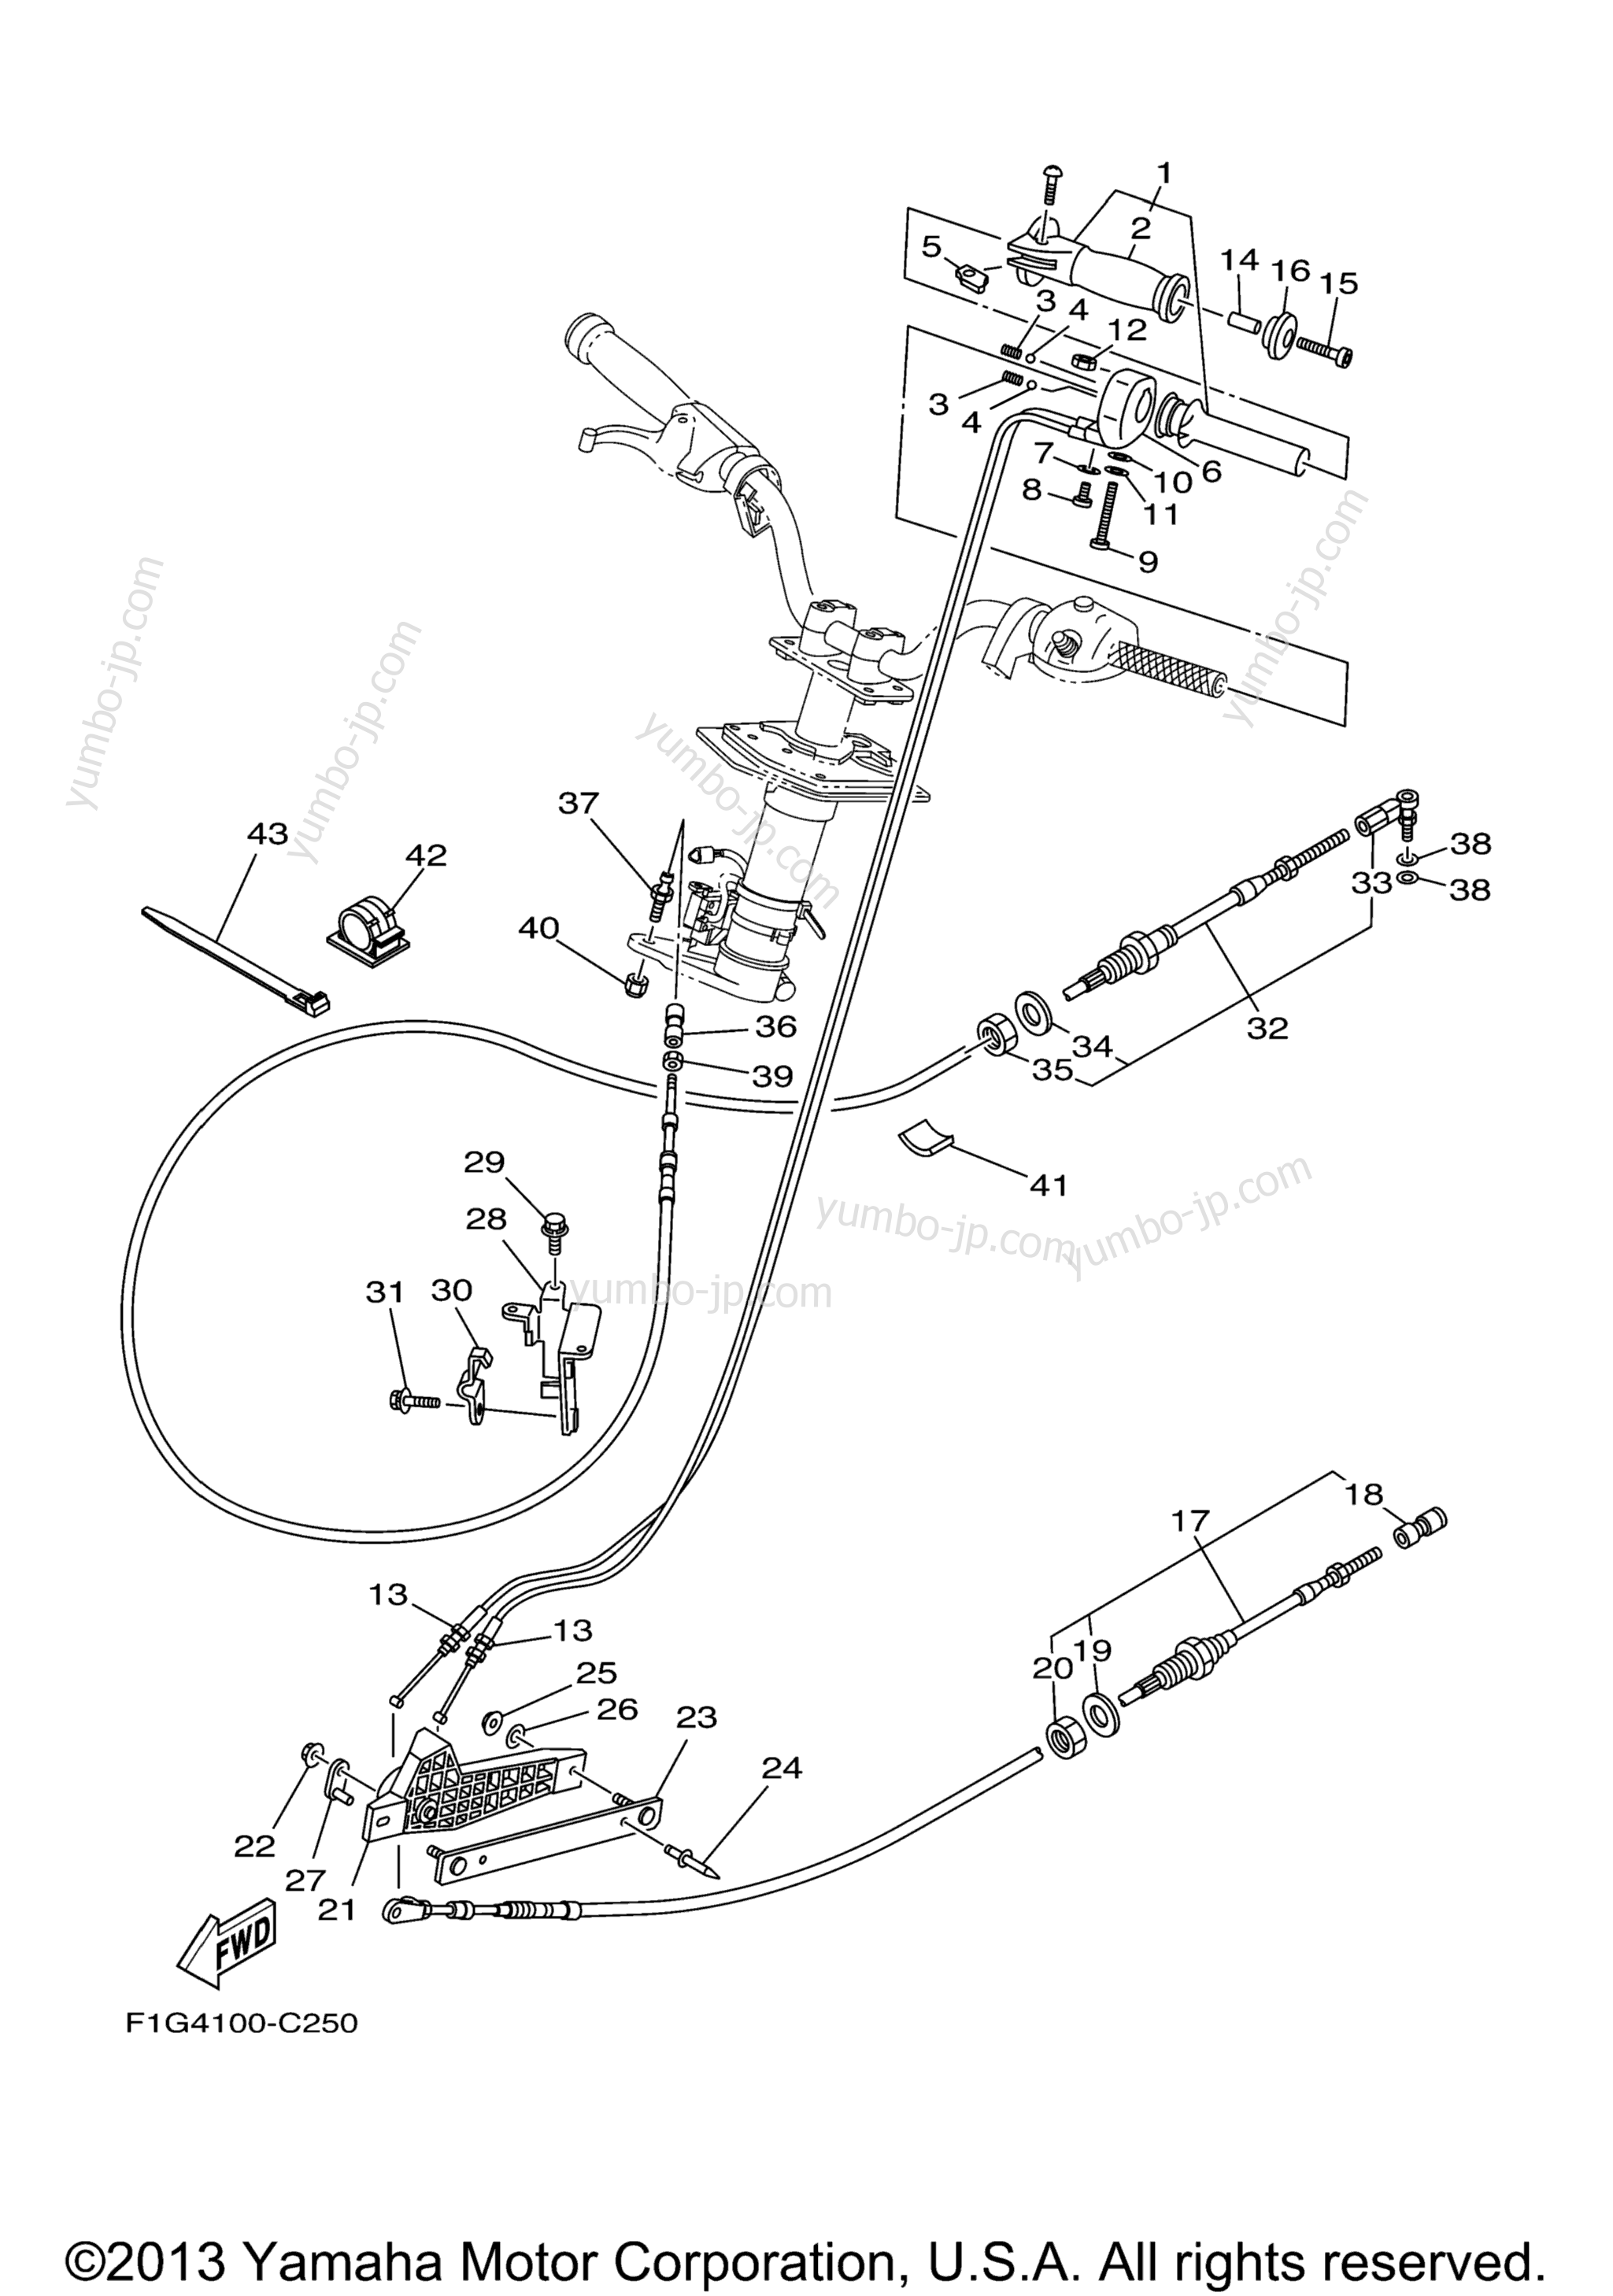 Устройство дистанционного управления / Кабеля для гидроциклов YAMAHA GP1300R (GP1300C) 2004 г.